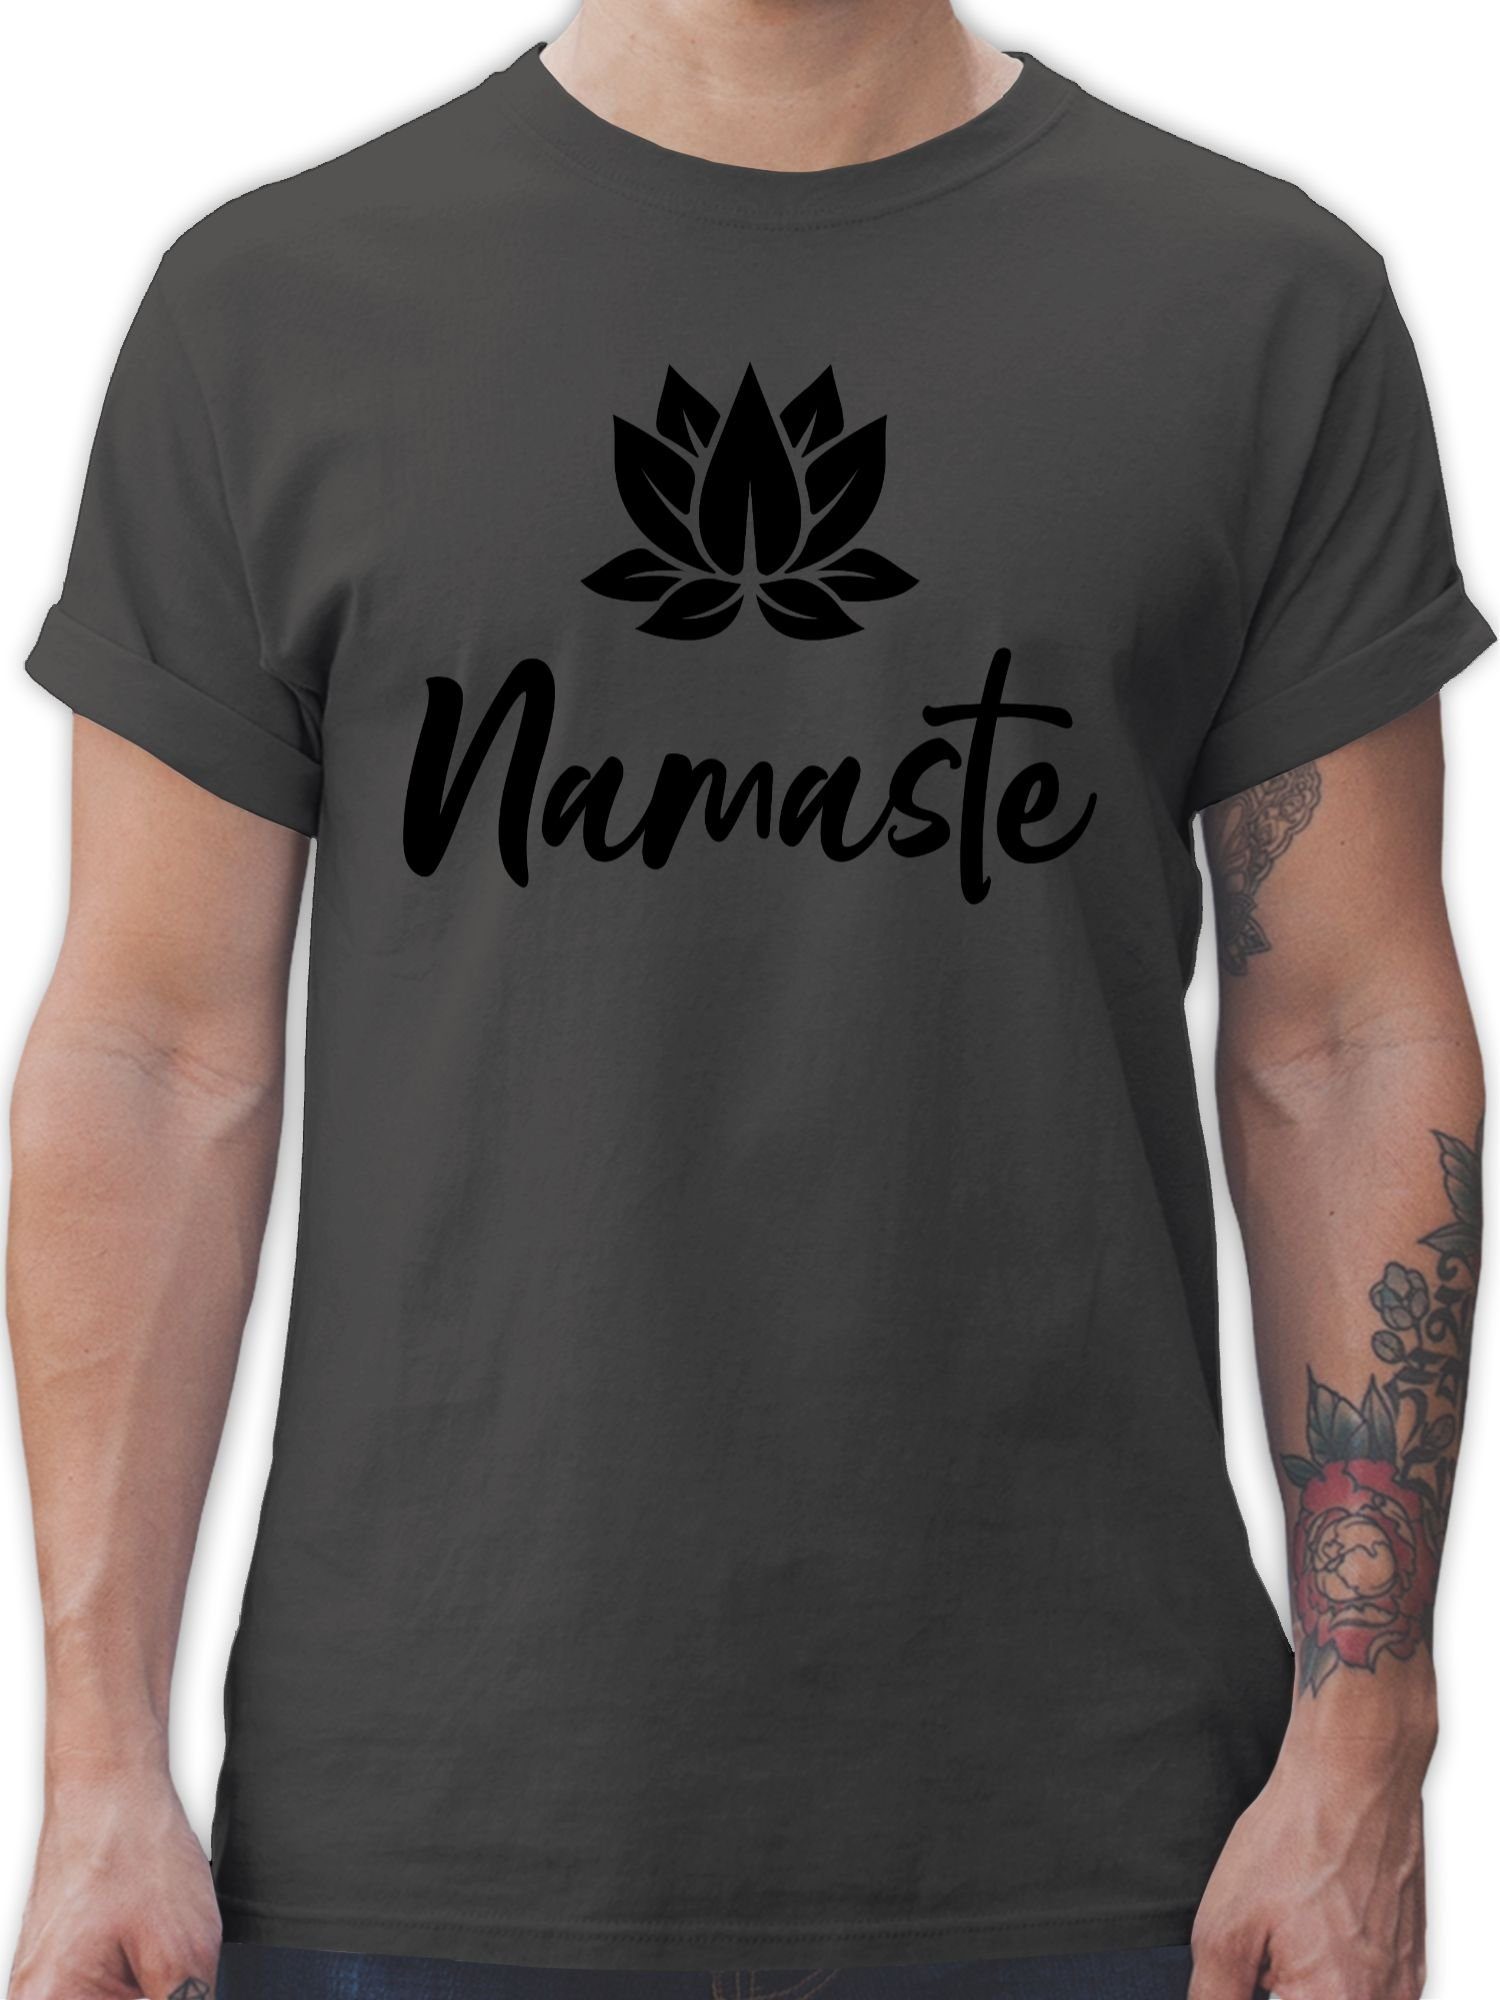 Shirtracer T-Shirt Namaste mit Lotusblüte schwarz Yoga und Wellness Geschenk